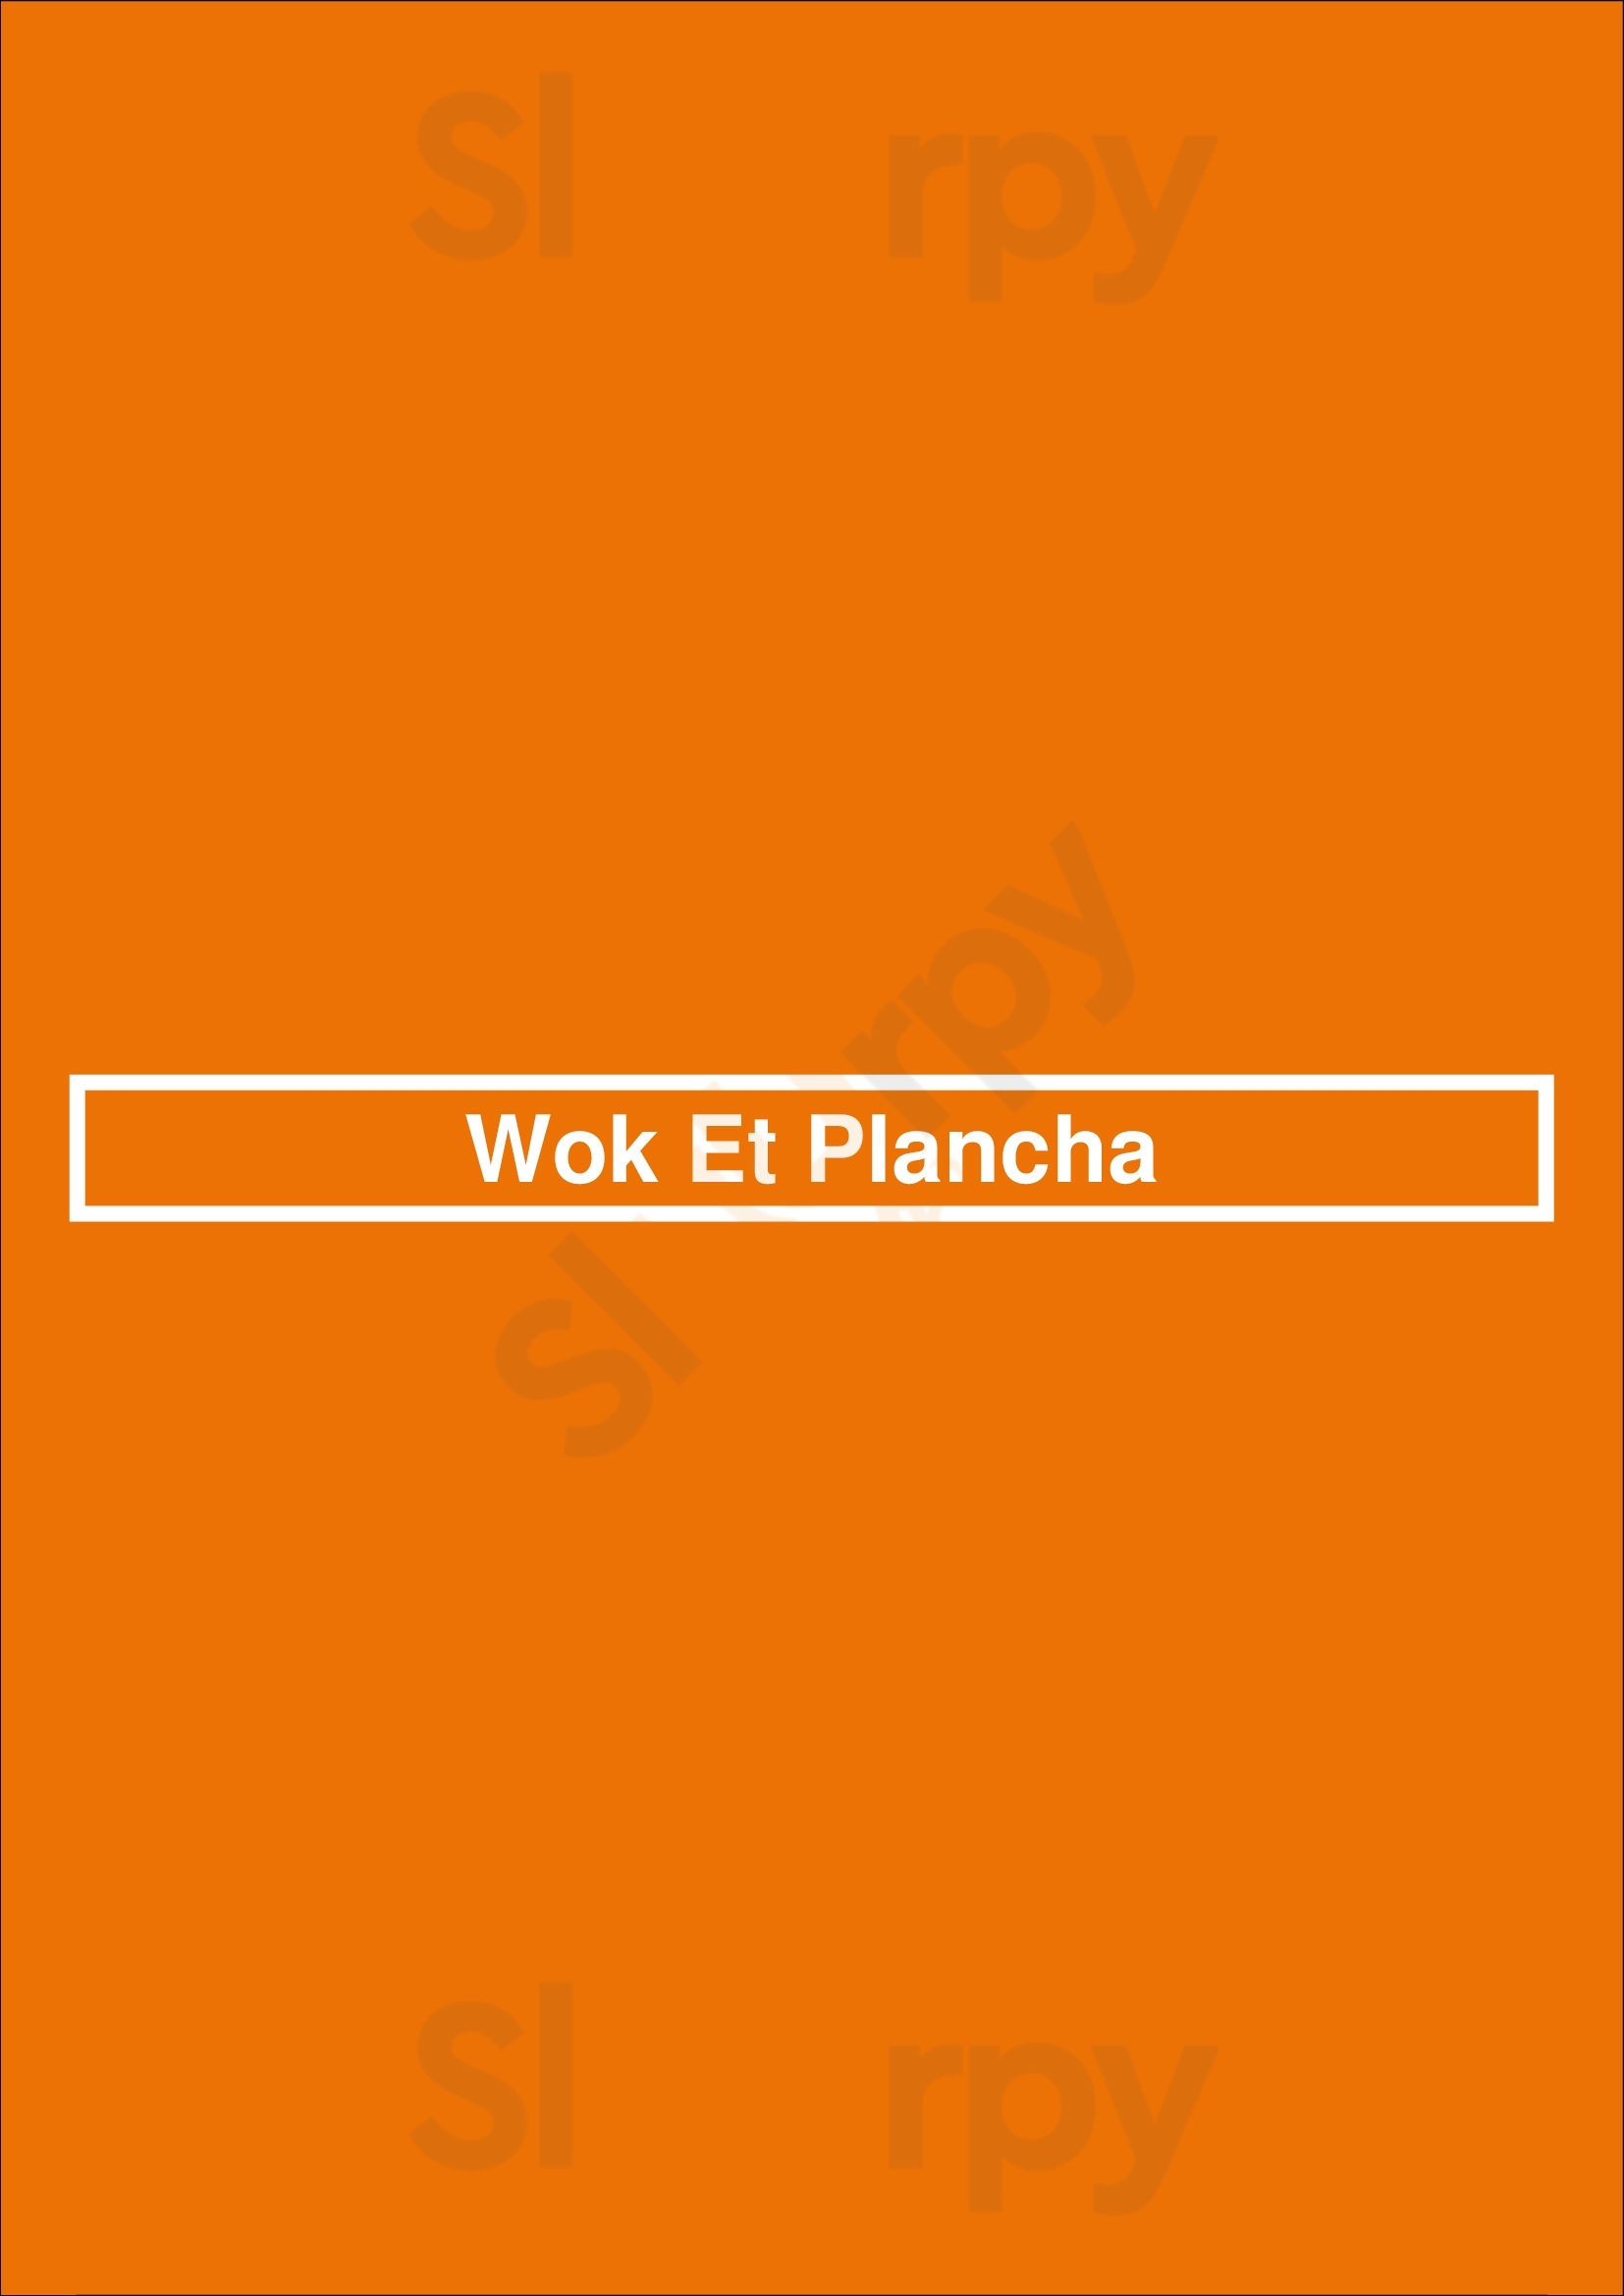 Wok Et Plancha Cruseilles Menu - 1